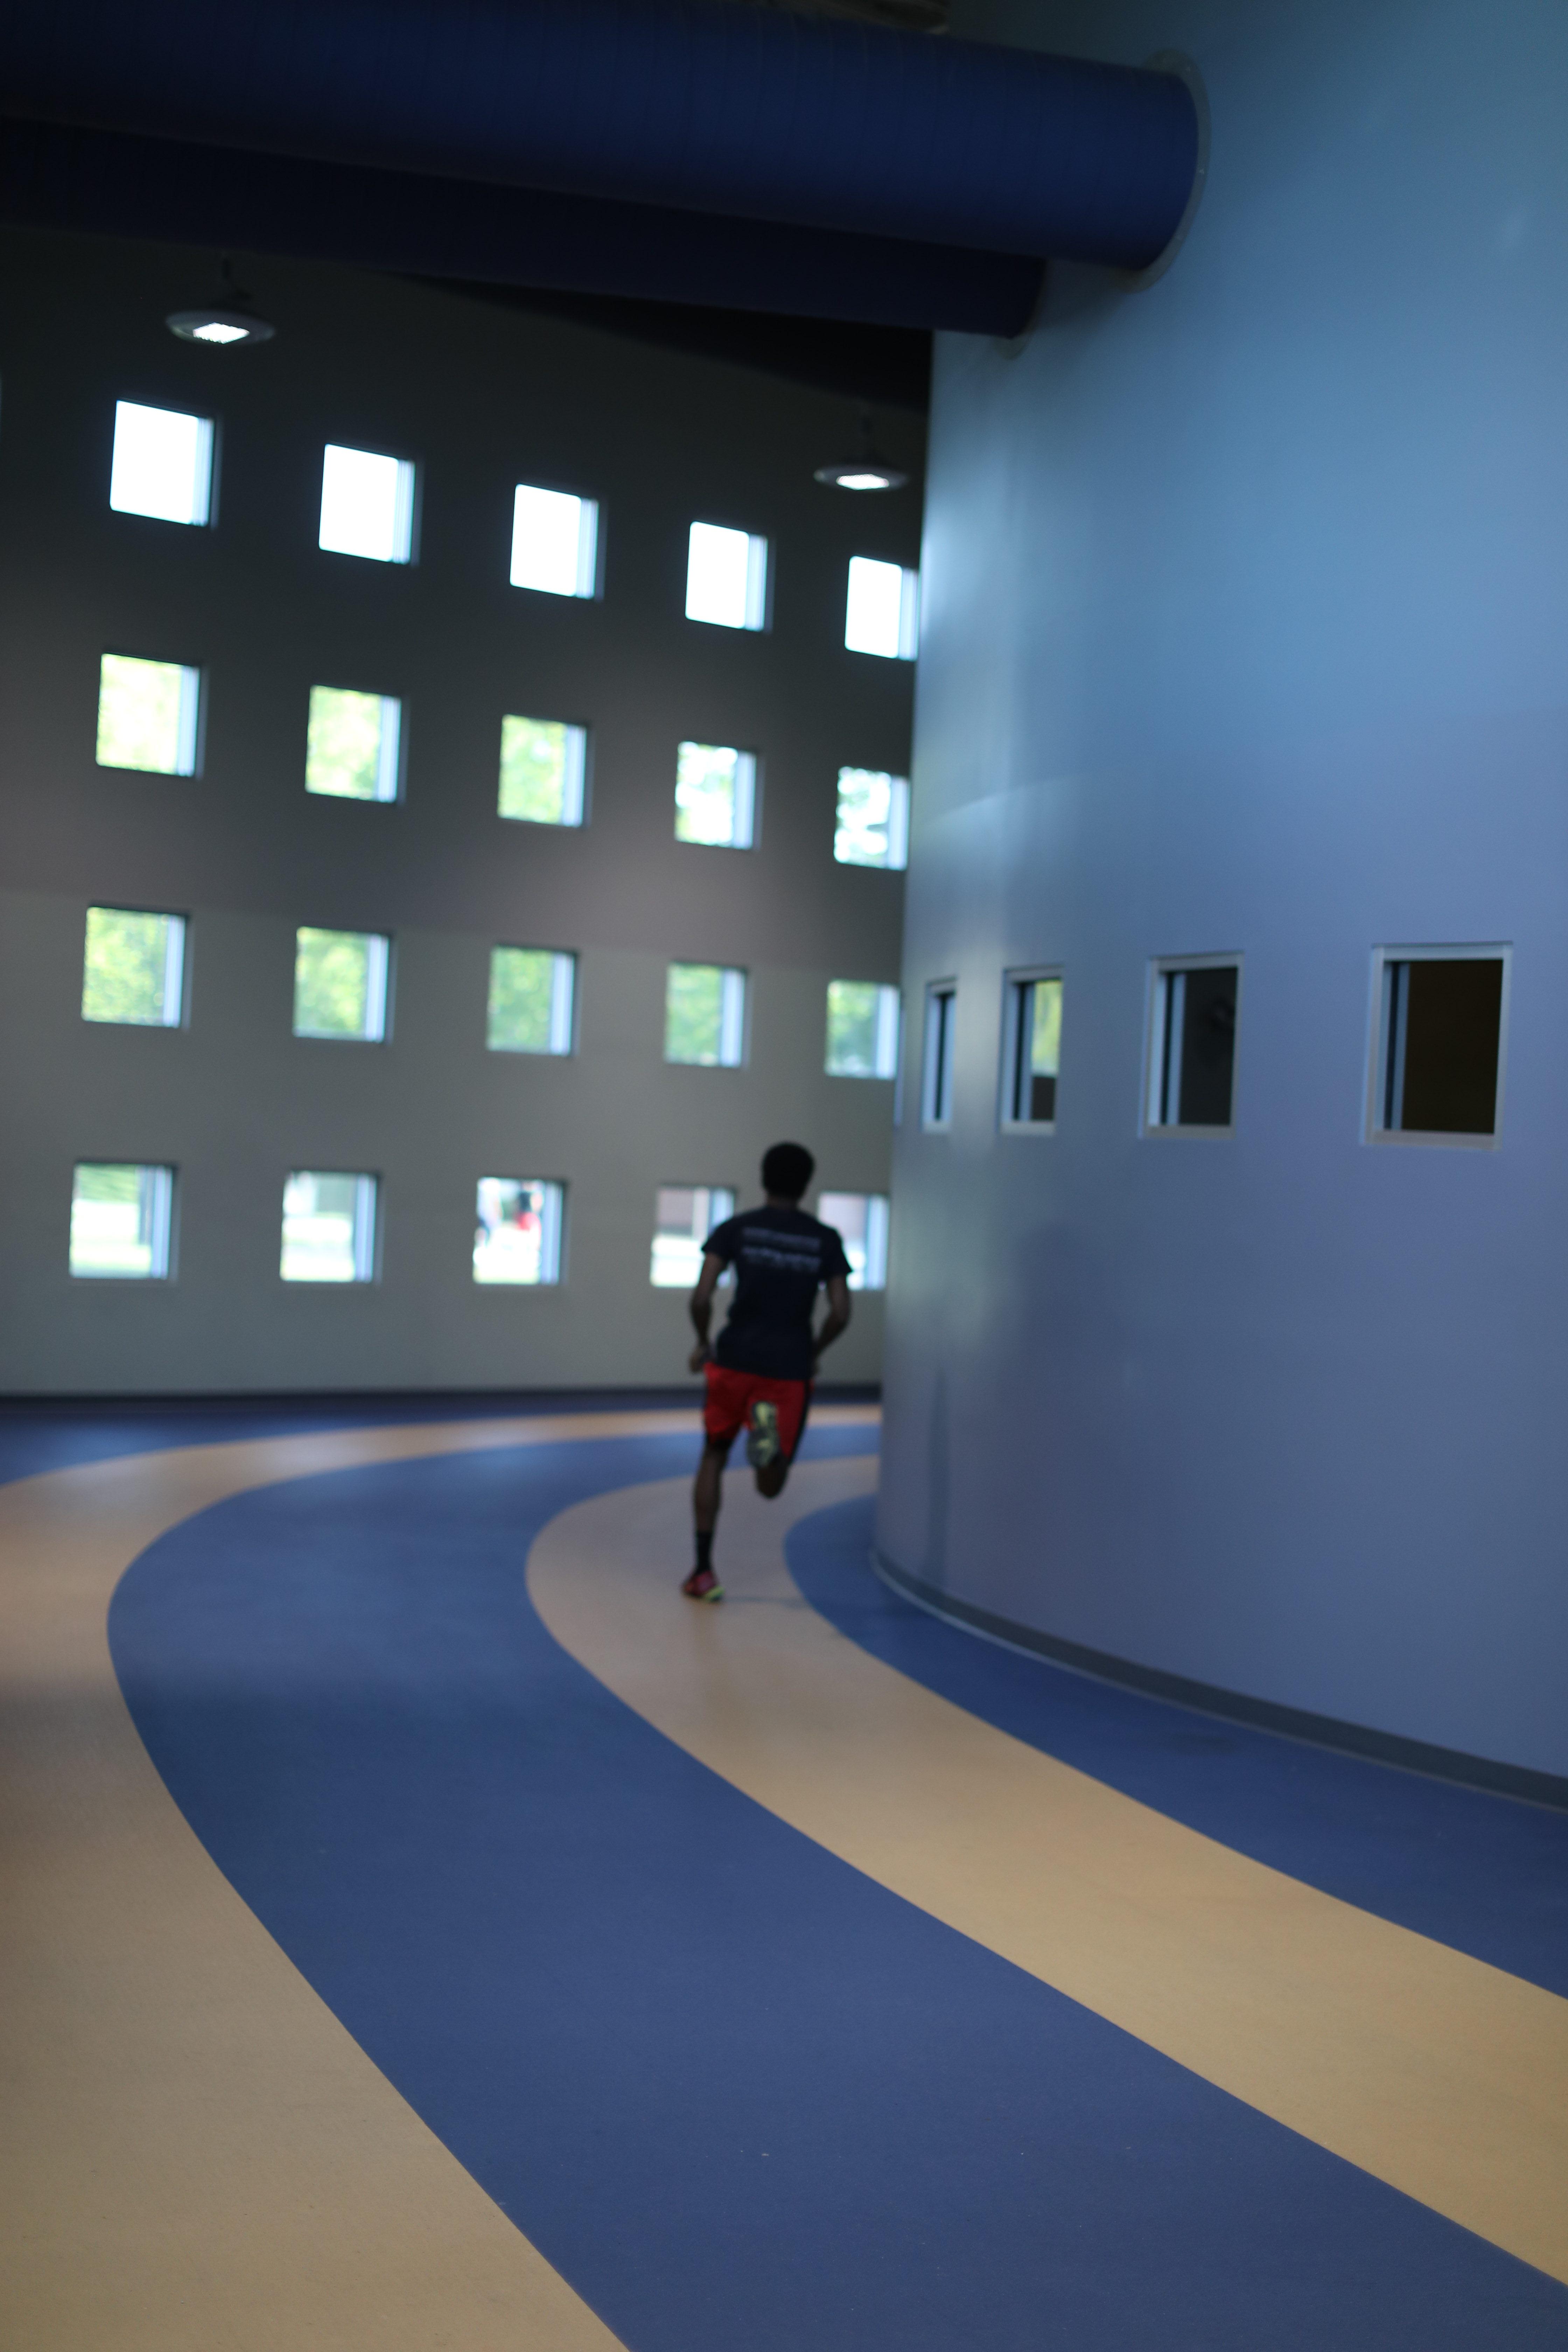  一个a和t的学生在室内跑道上跑步-校园娱乐中心